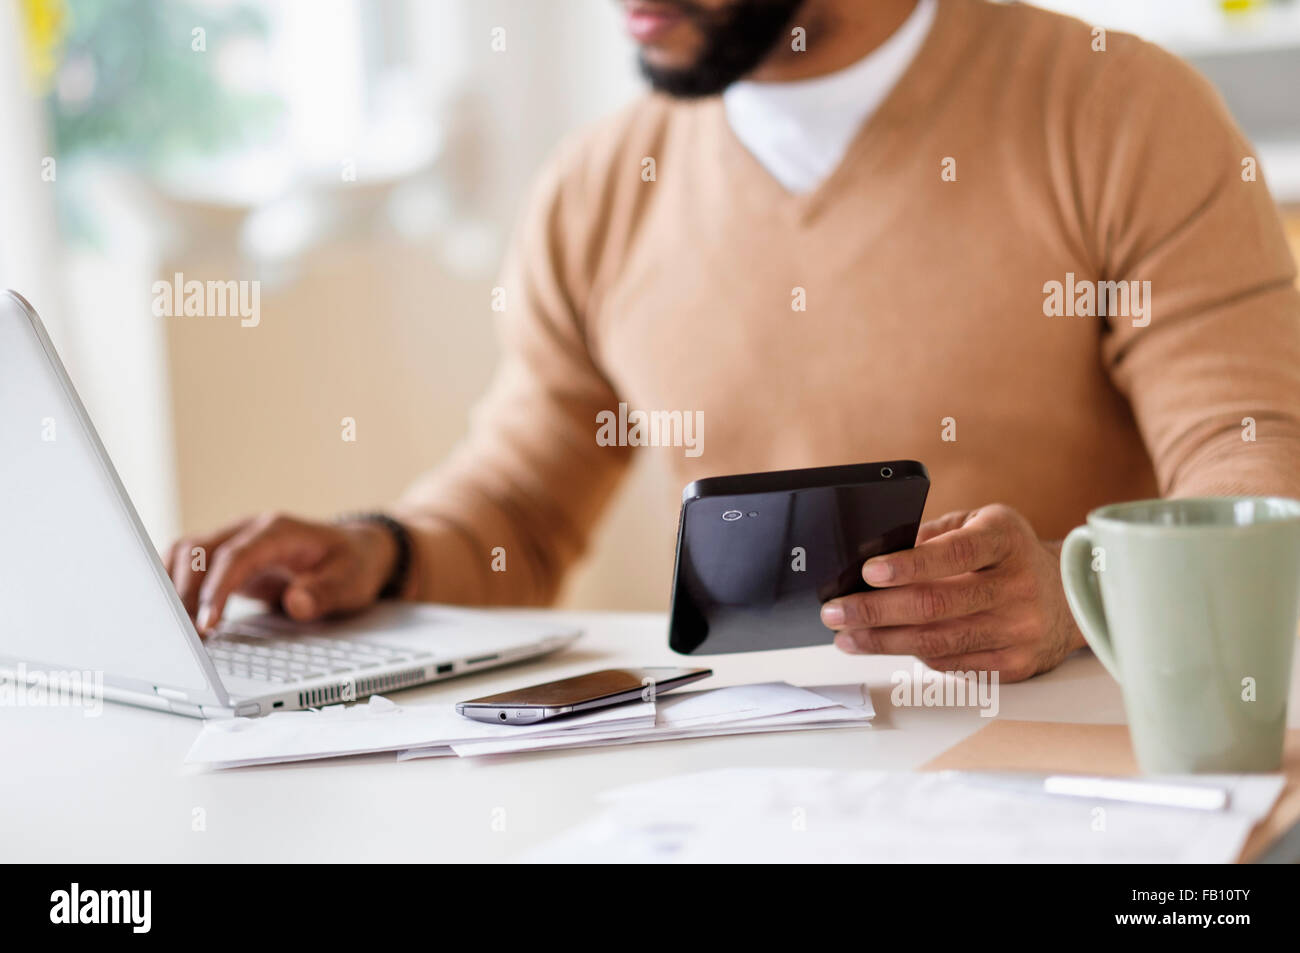 L'homme travaillant avec laptop et holding digital tablet Banque D'Images